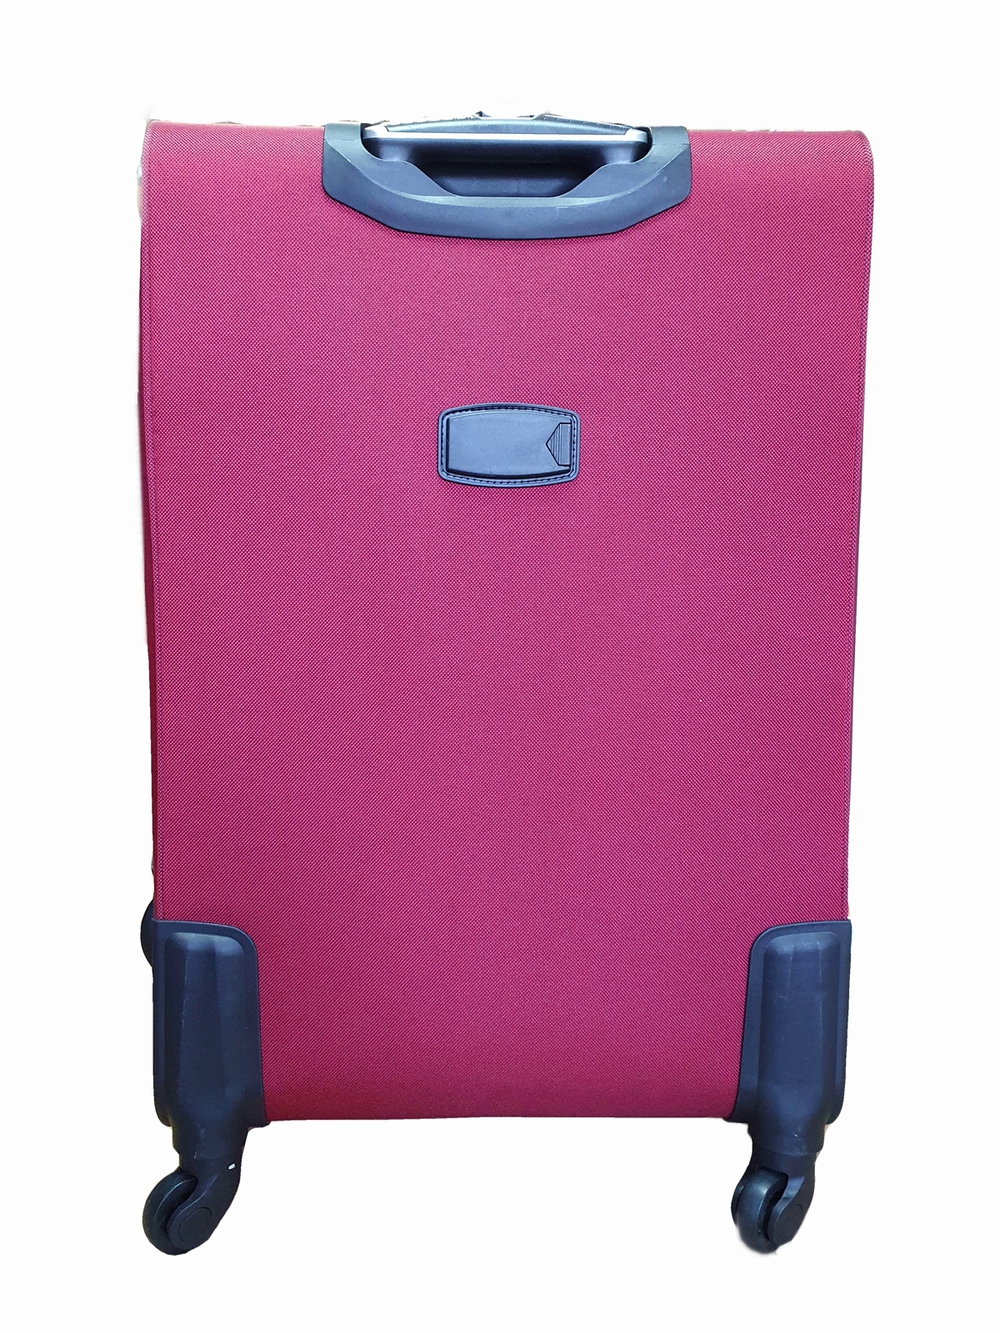 Чемодан на колесах тканевый L’case Barcelona размера S+ (58х38х26 (+5) см), объем 47.5 литров, вес 3 кг, Бордовый